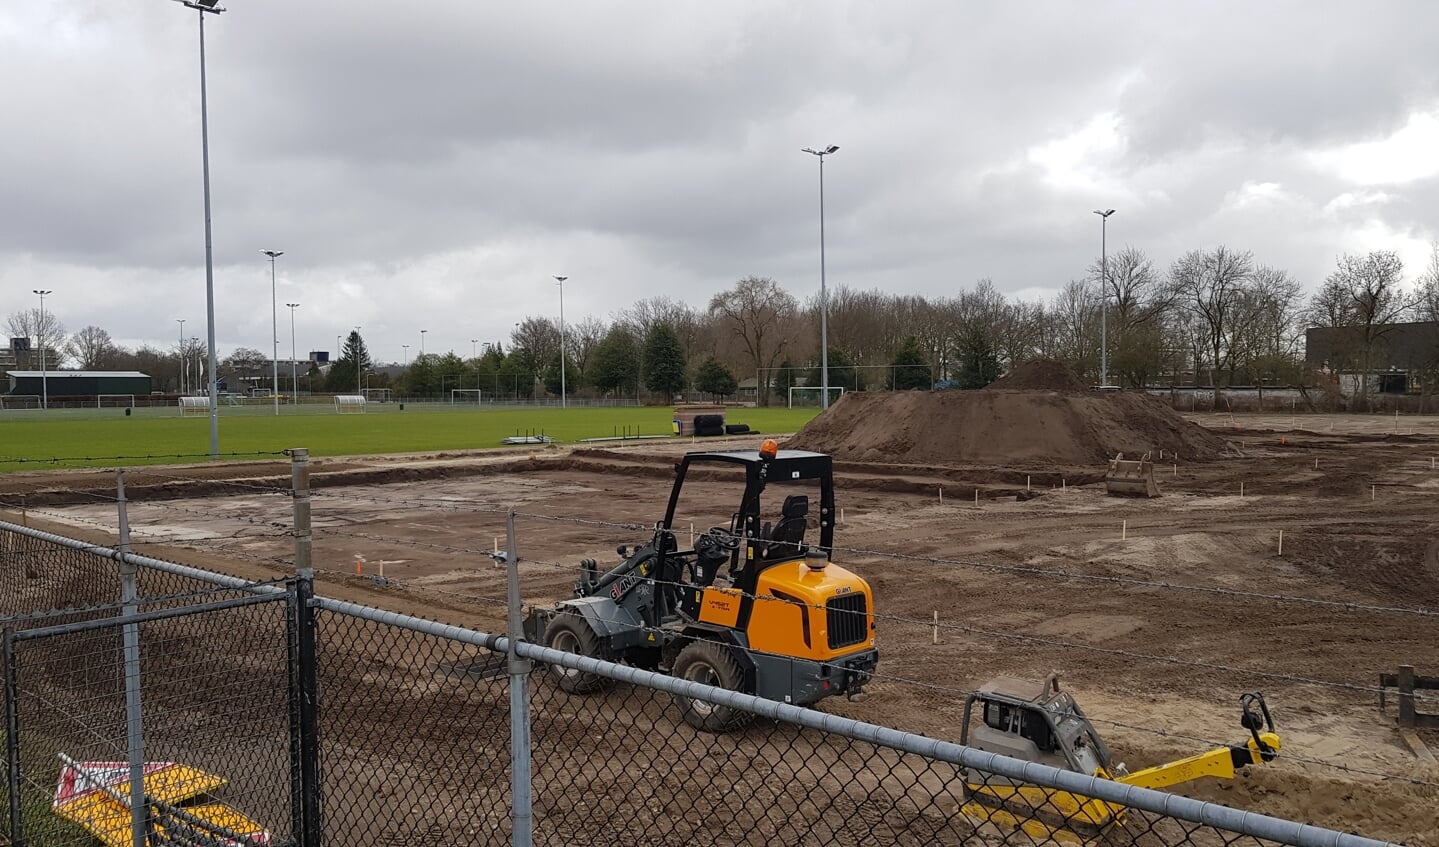 Voetbalvereniging Blauw Geel ’55 heeft op Sportpark Peppelensteeg een trainingsveld ter beschikking gesteld voor de bouw van een Playce X, een openbaar multifunctioneel sportveld. Het is een nieuwe stap om het gebied om te vormen tot Open Sportpark.